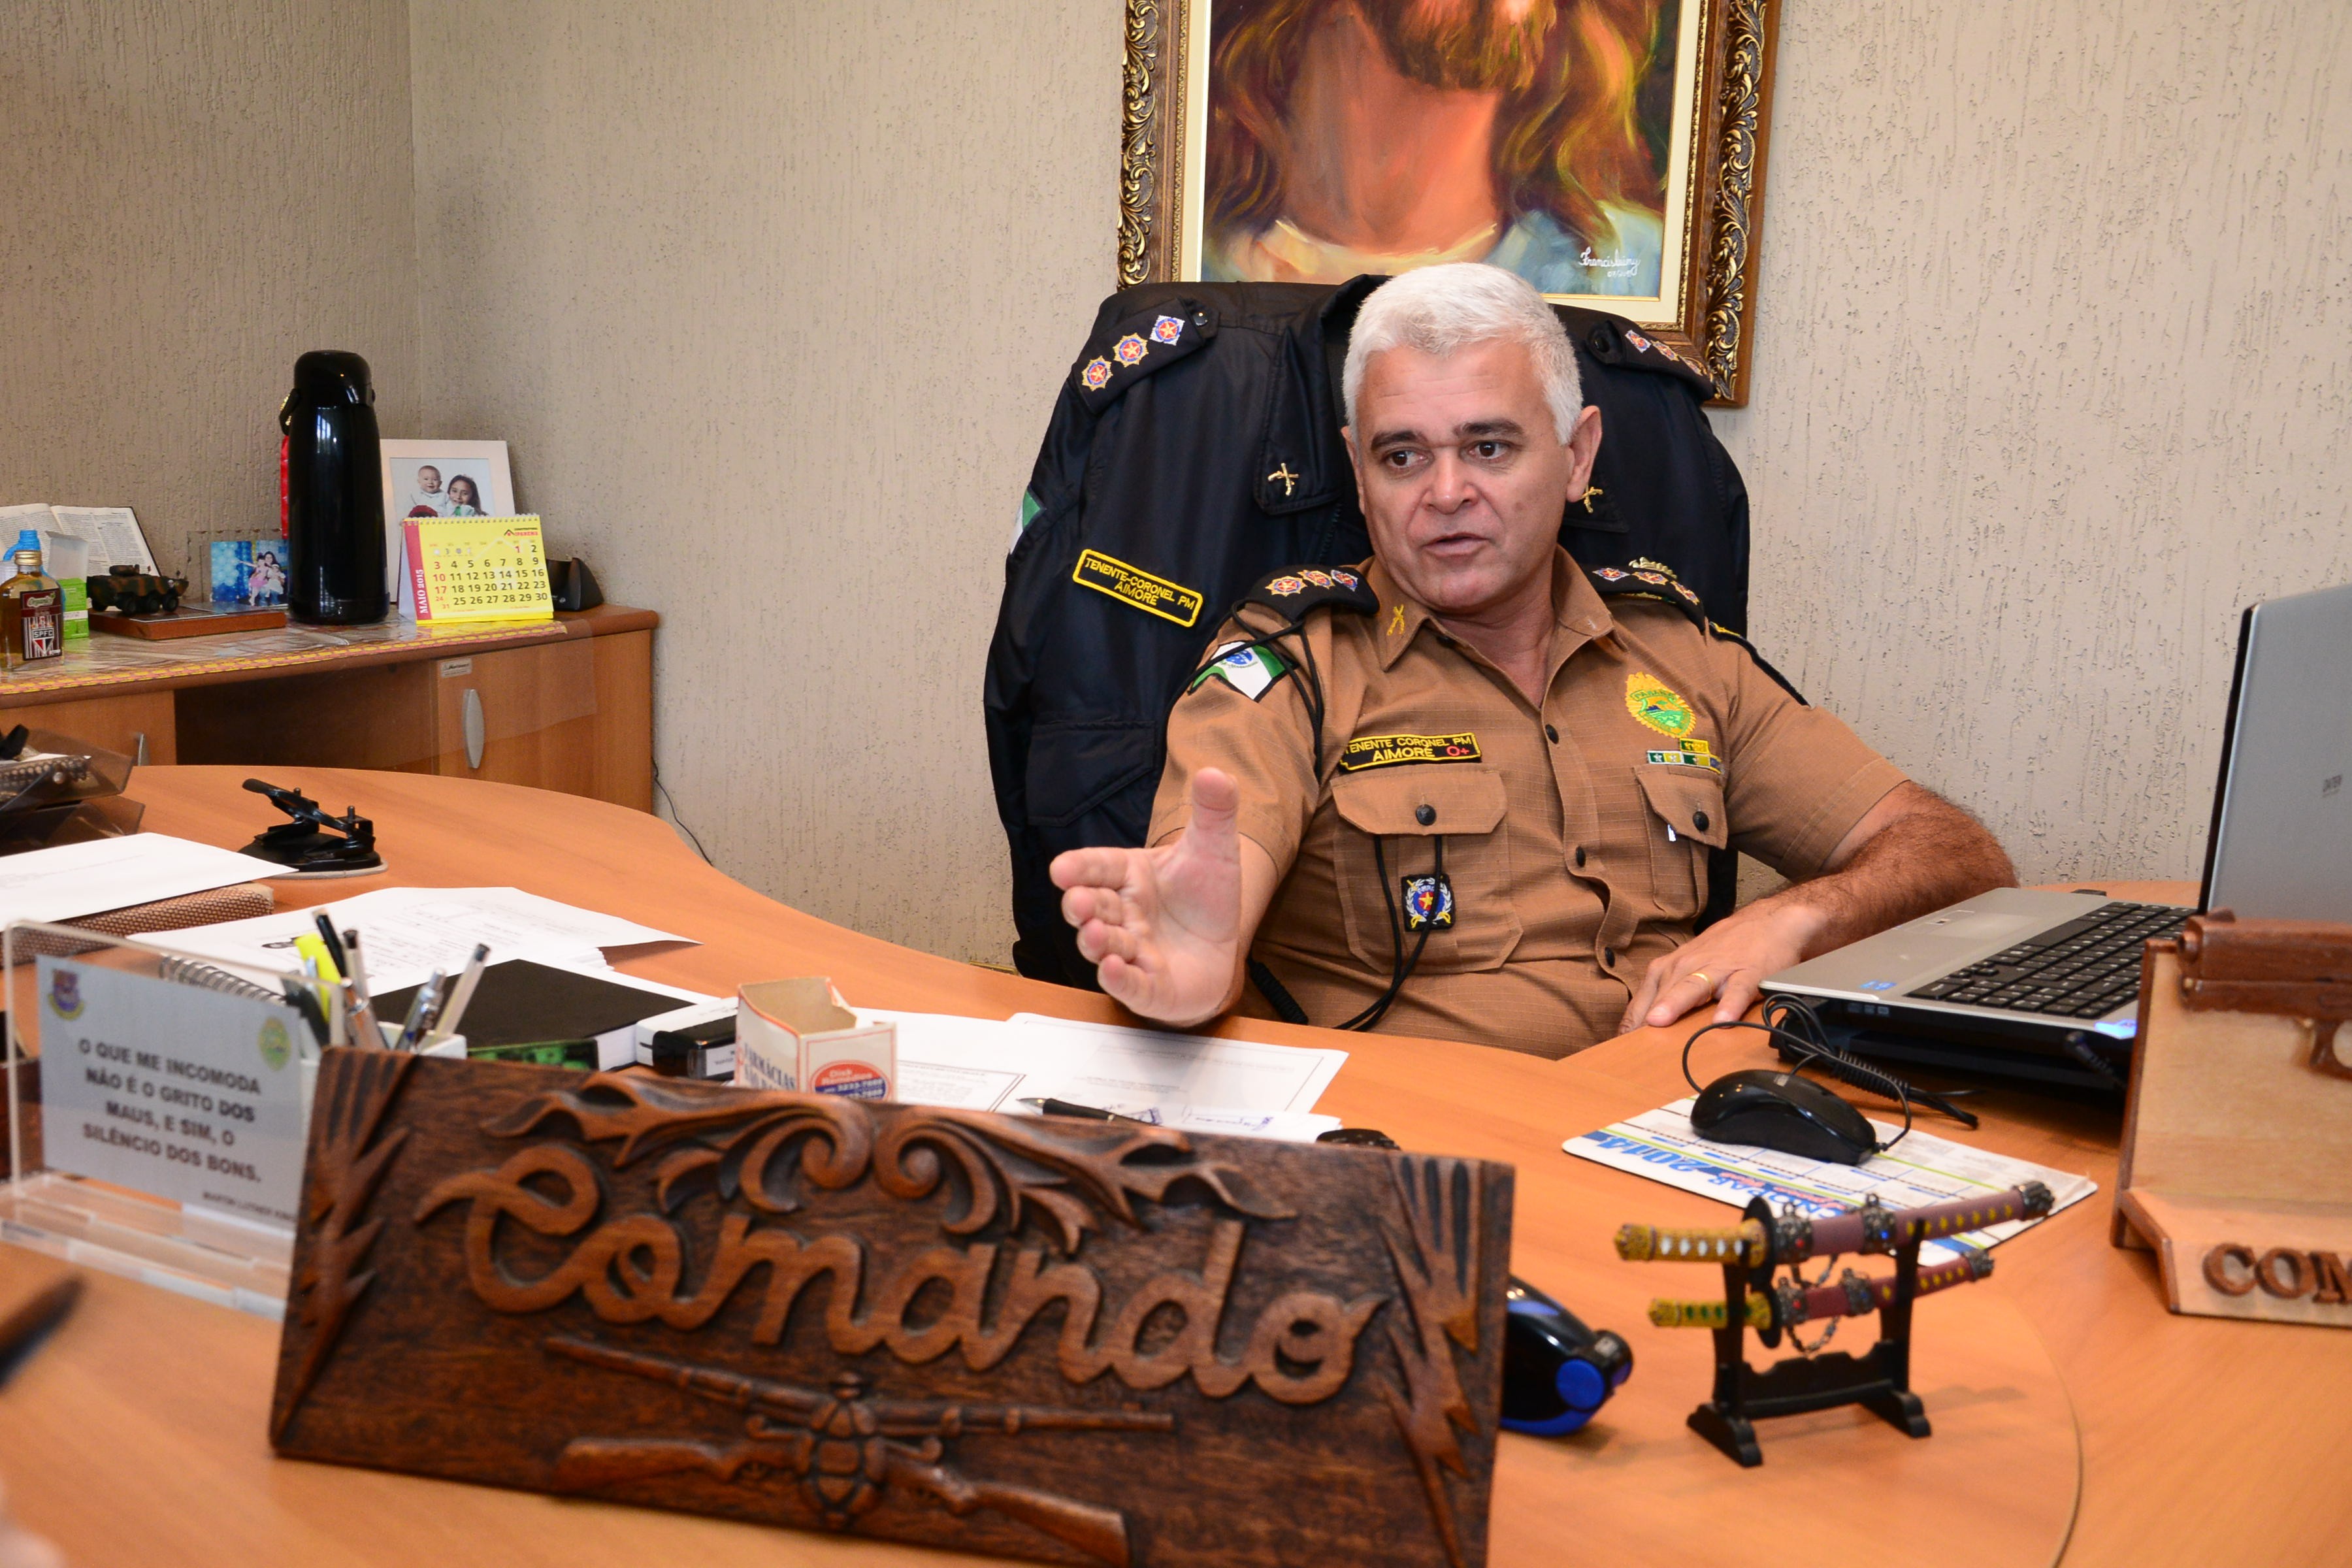 "Os policiais atiraram porque eles reagiram a abordagem e sacaram as armas “, reitera o coronel - Foto: Delair Garcia